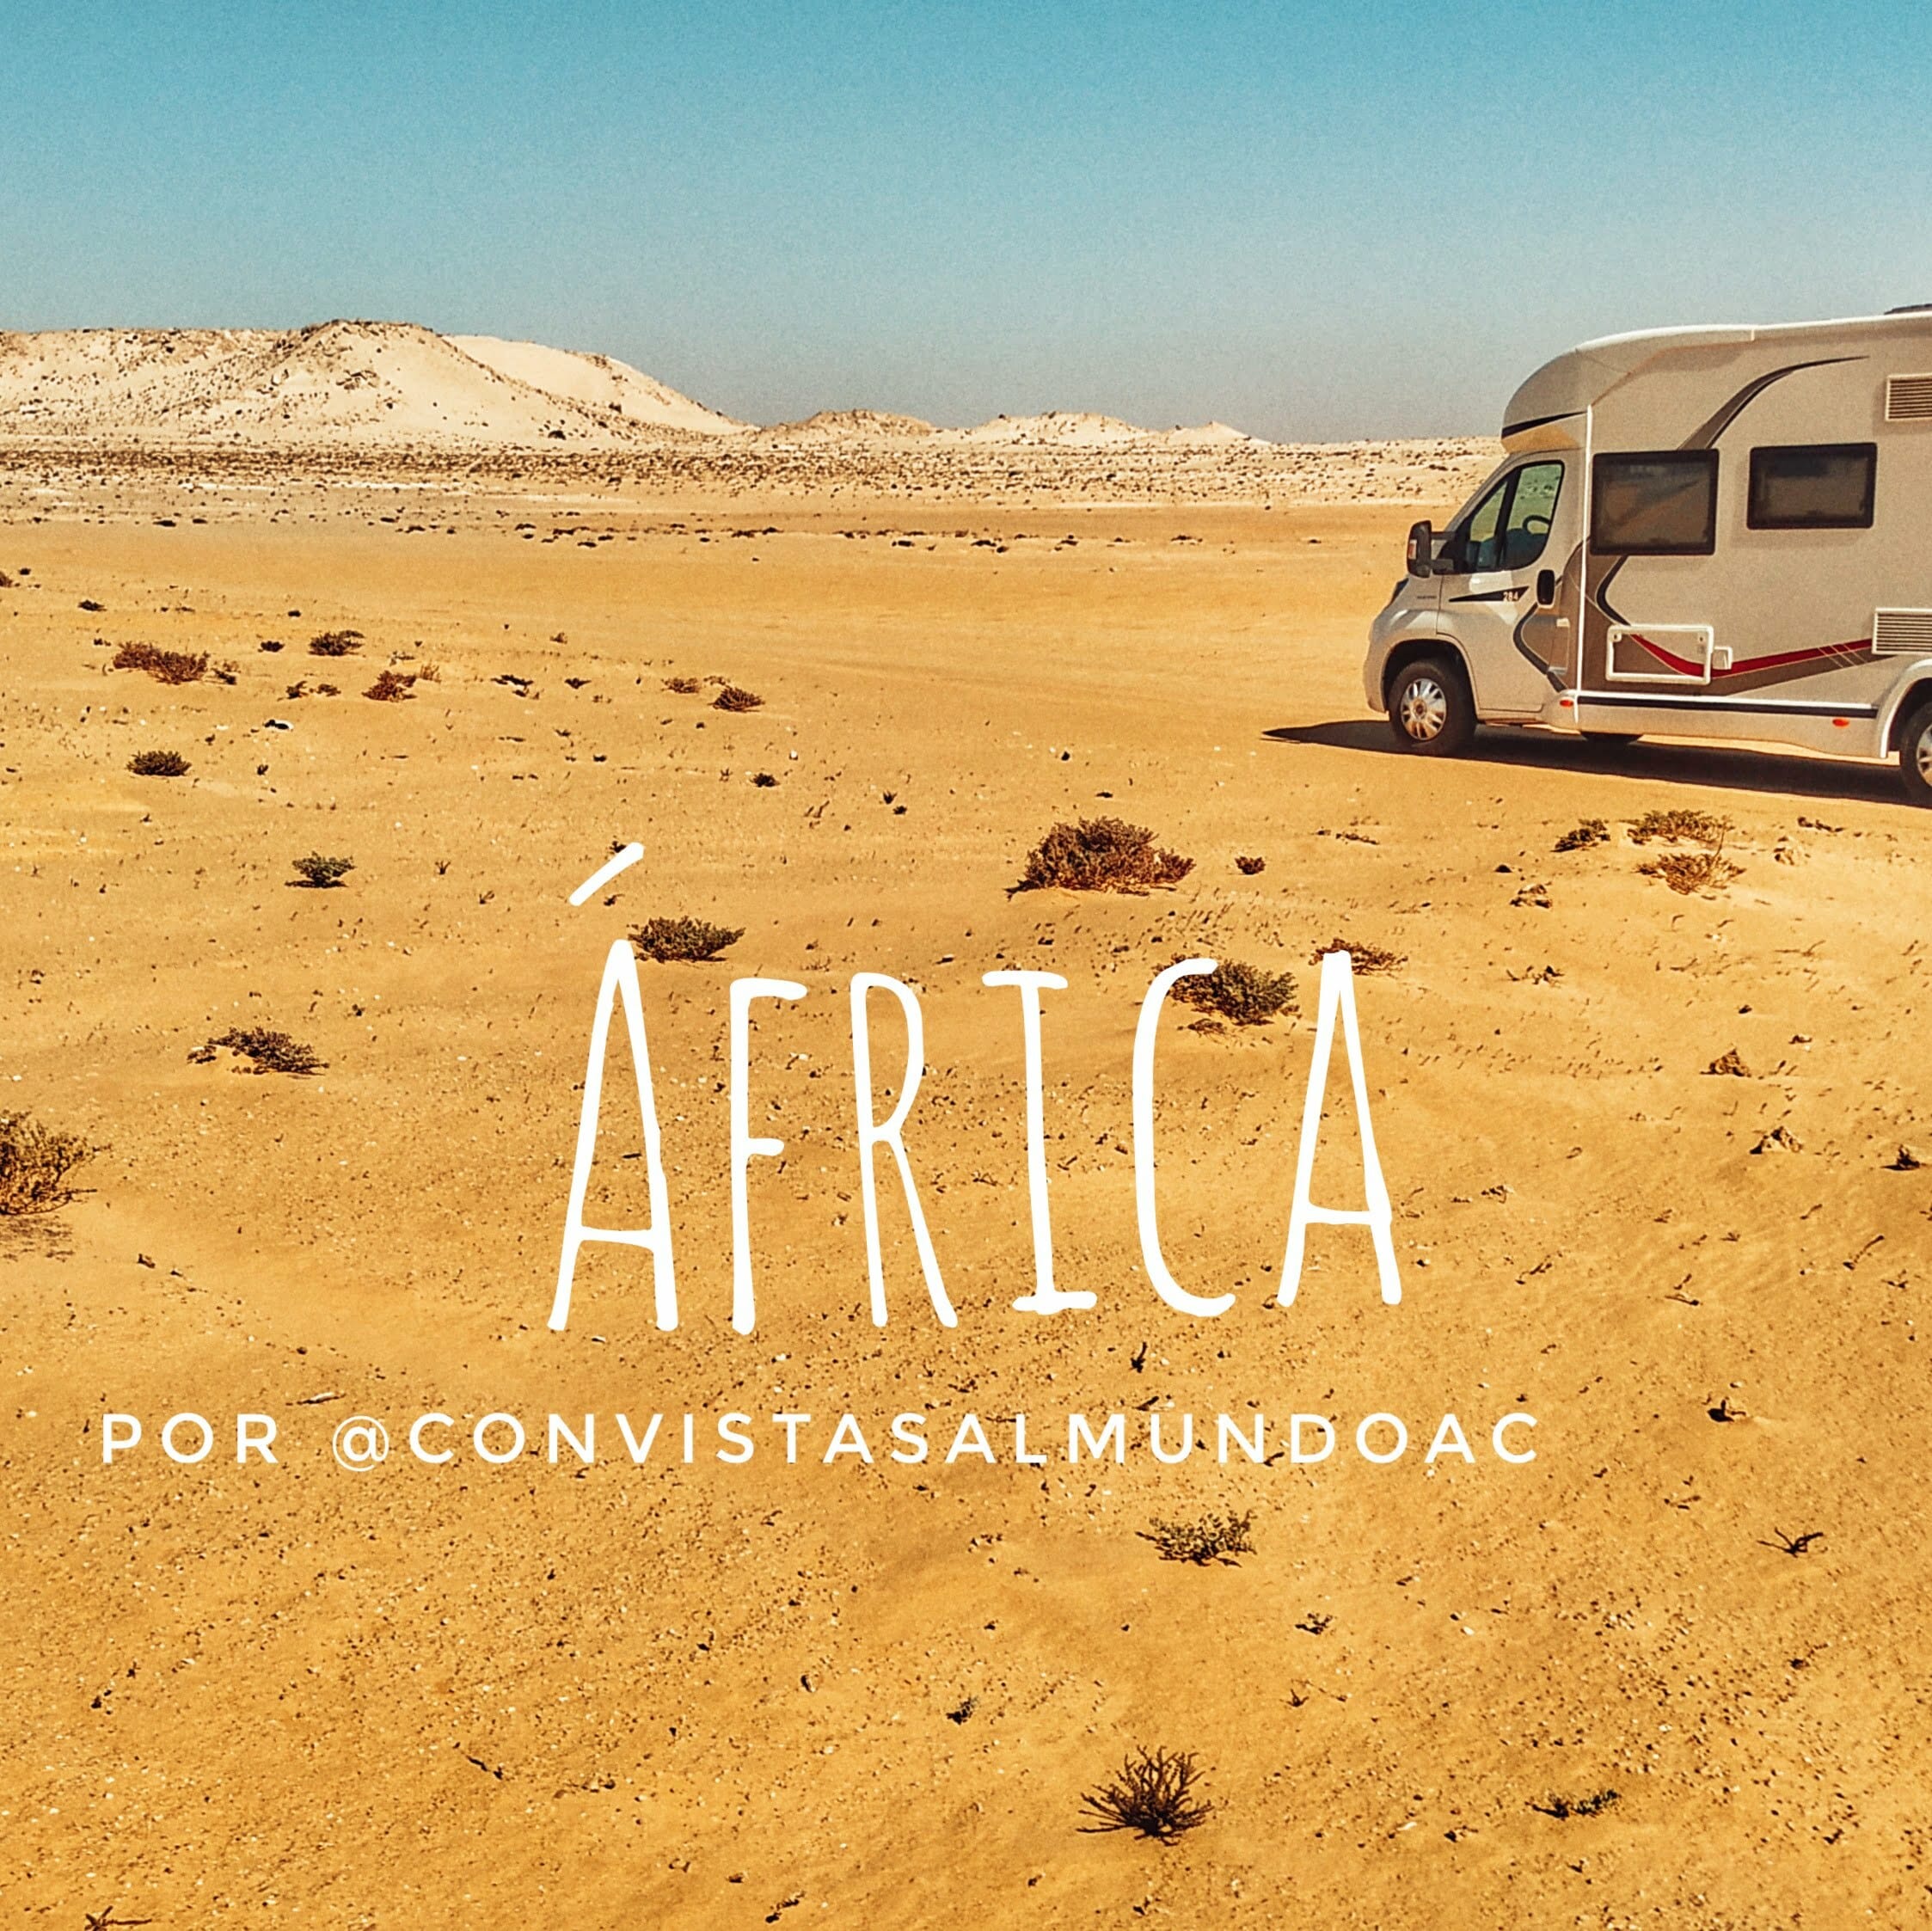 En este momento estás viendo África en autocaravana por los youtubers ConvistasalmundoAc